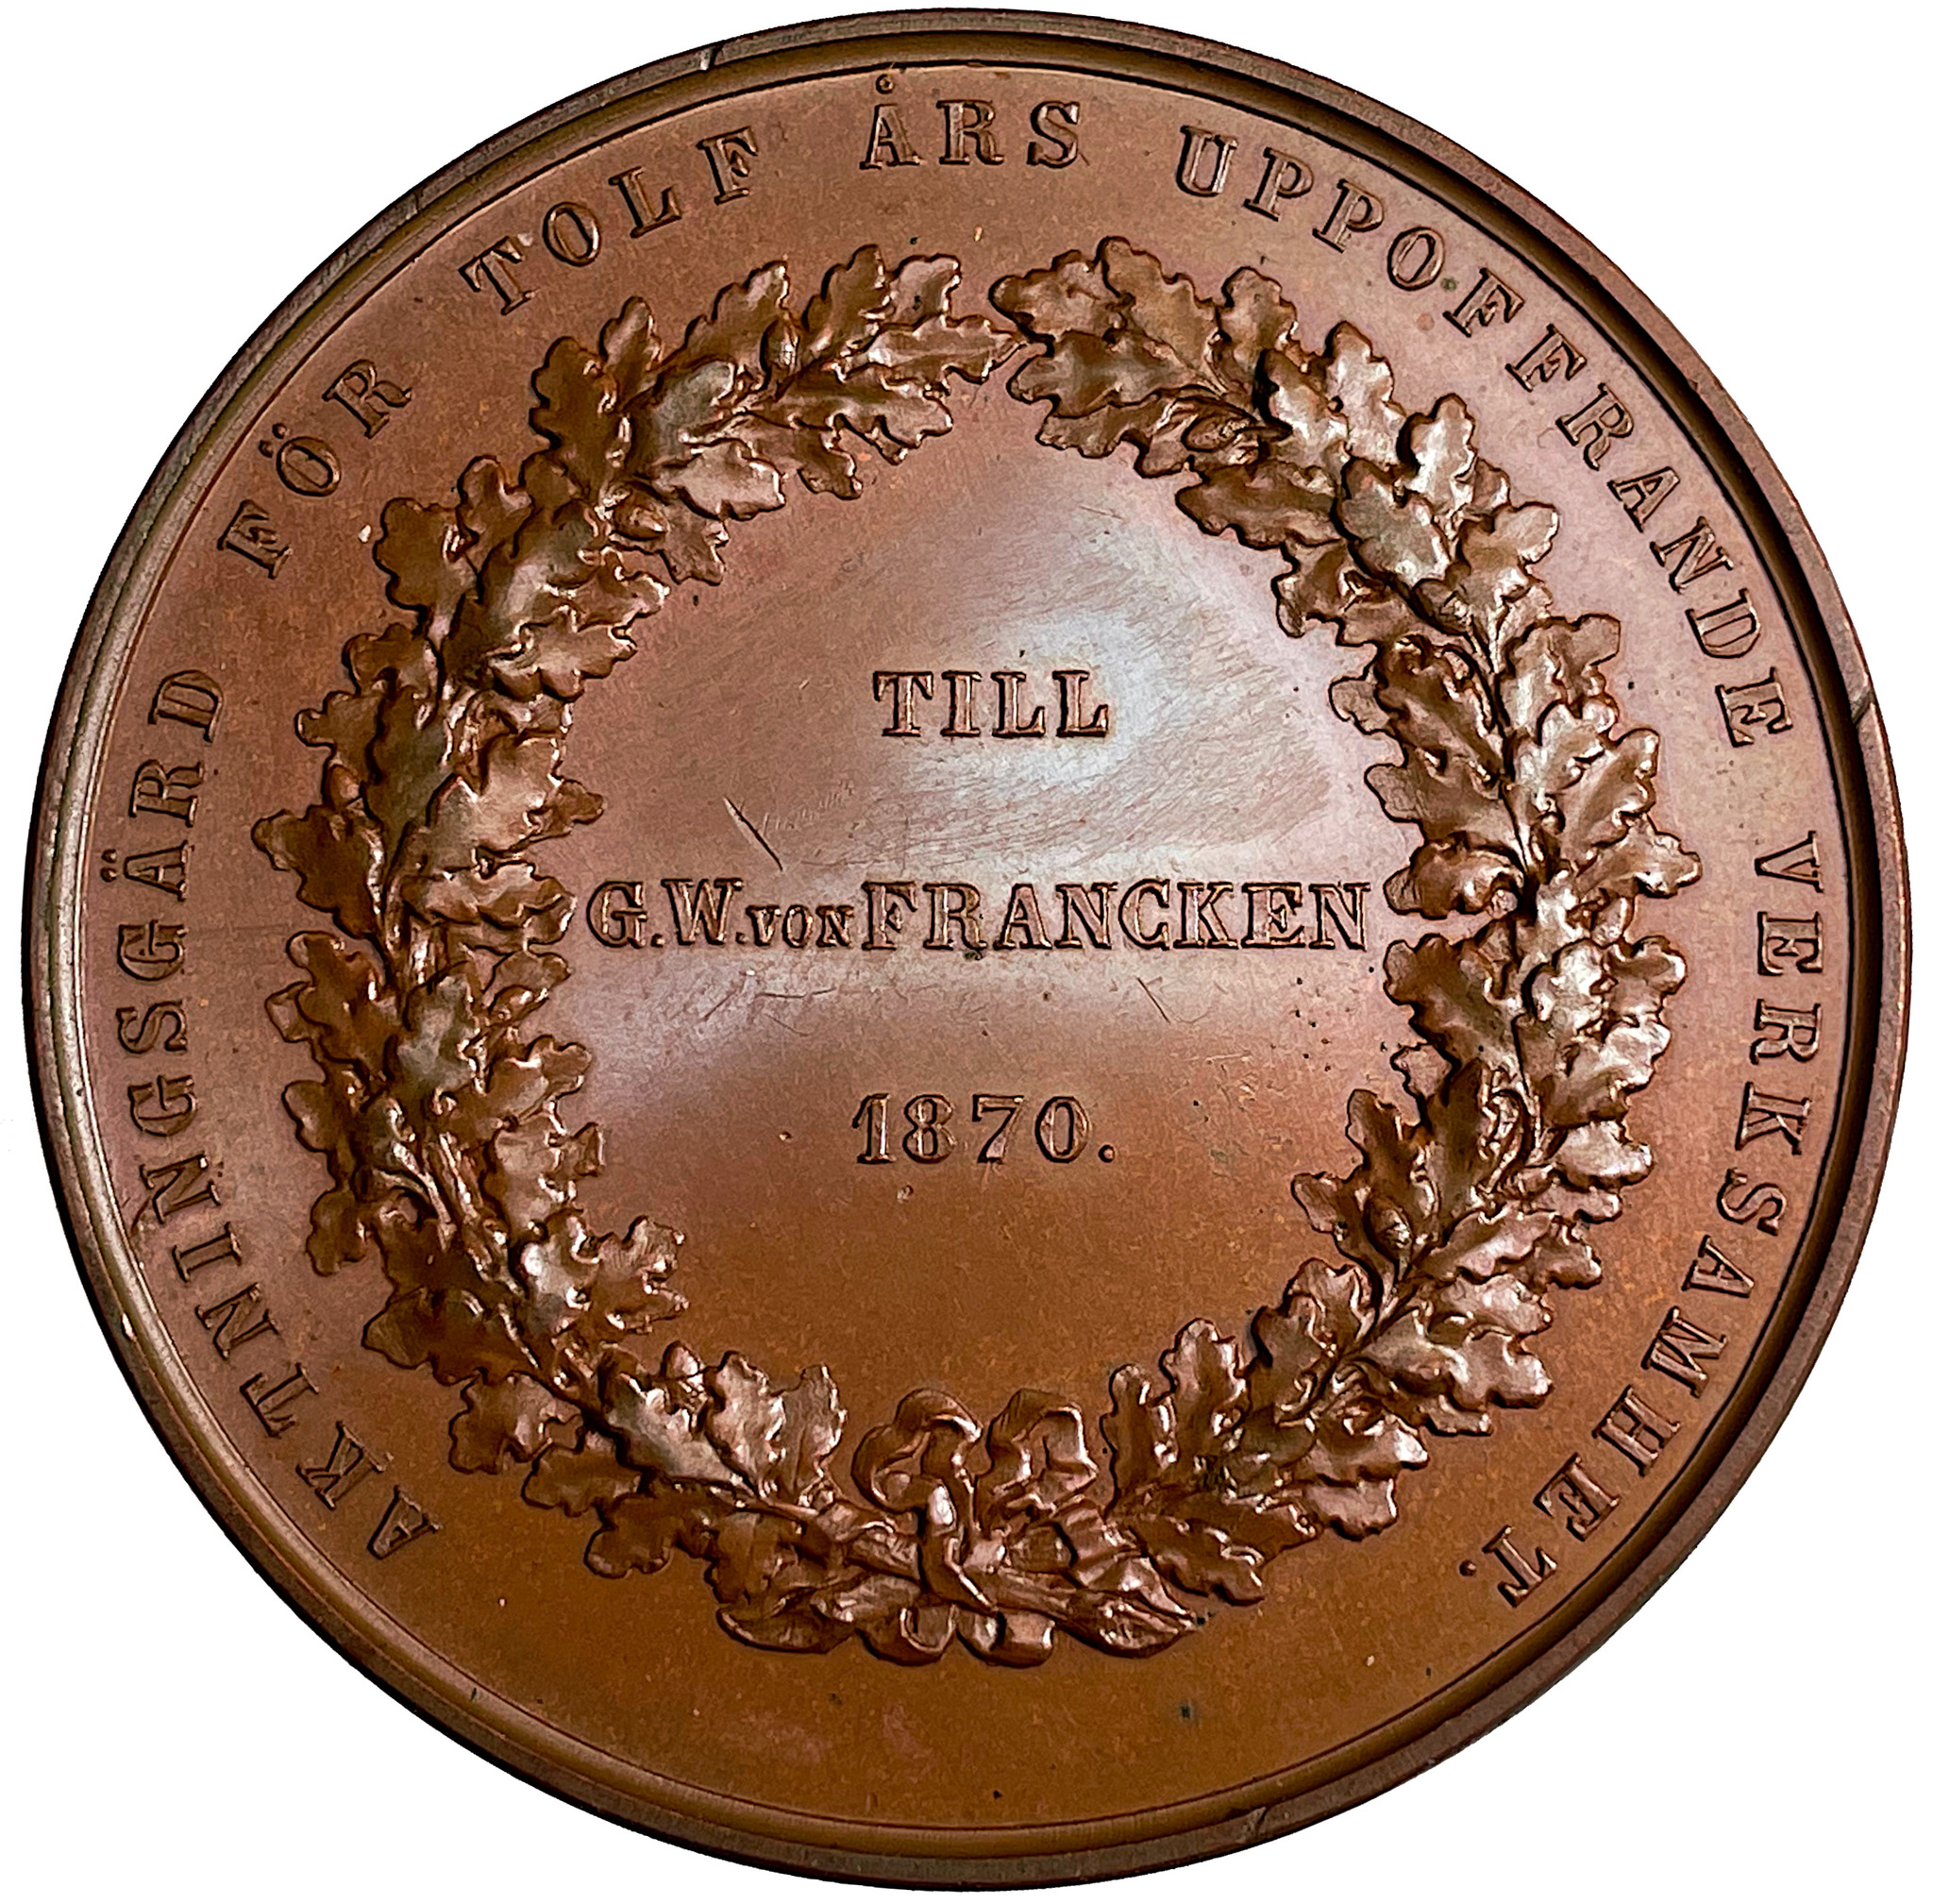 Militärsällskapet i Stockholms hedersmedalj utdelad till Georg Wolfgang von Francken den 28 oktober 1870 av Lea Ahlborn - Avslag i brons